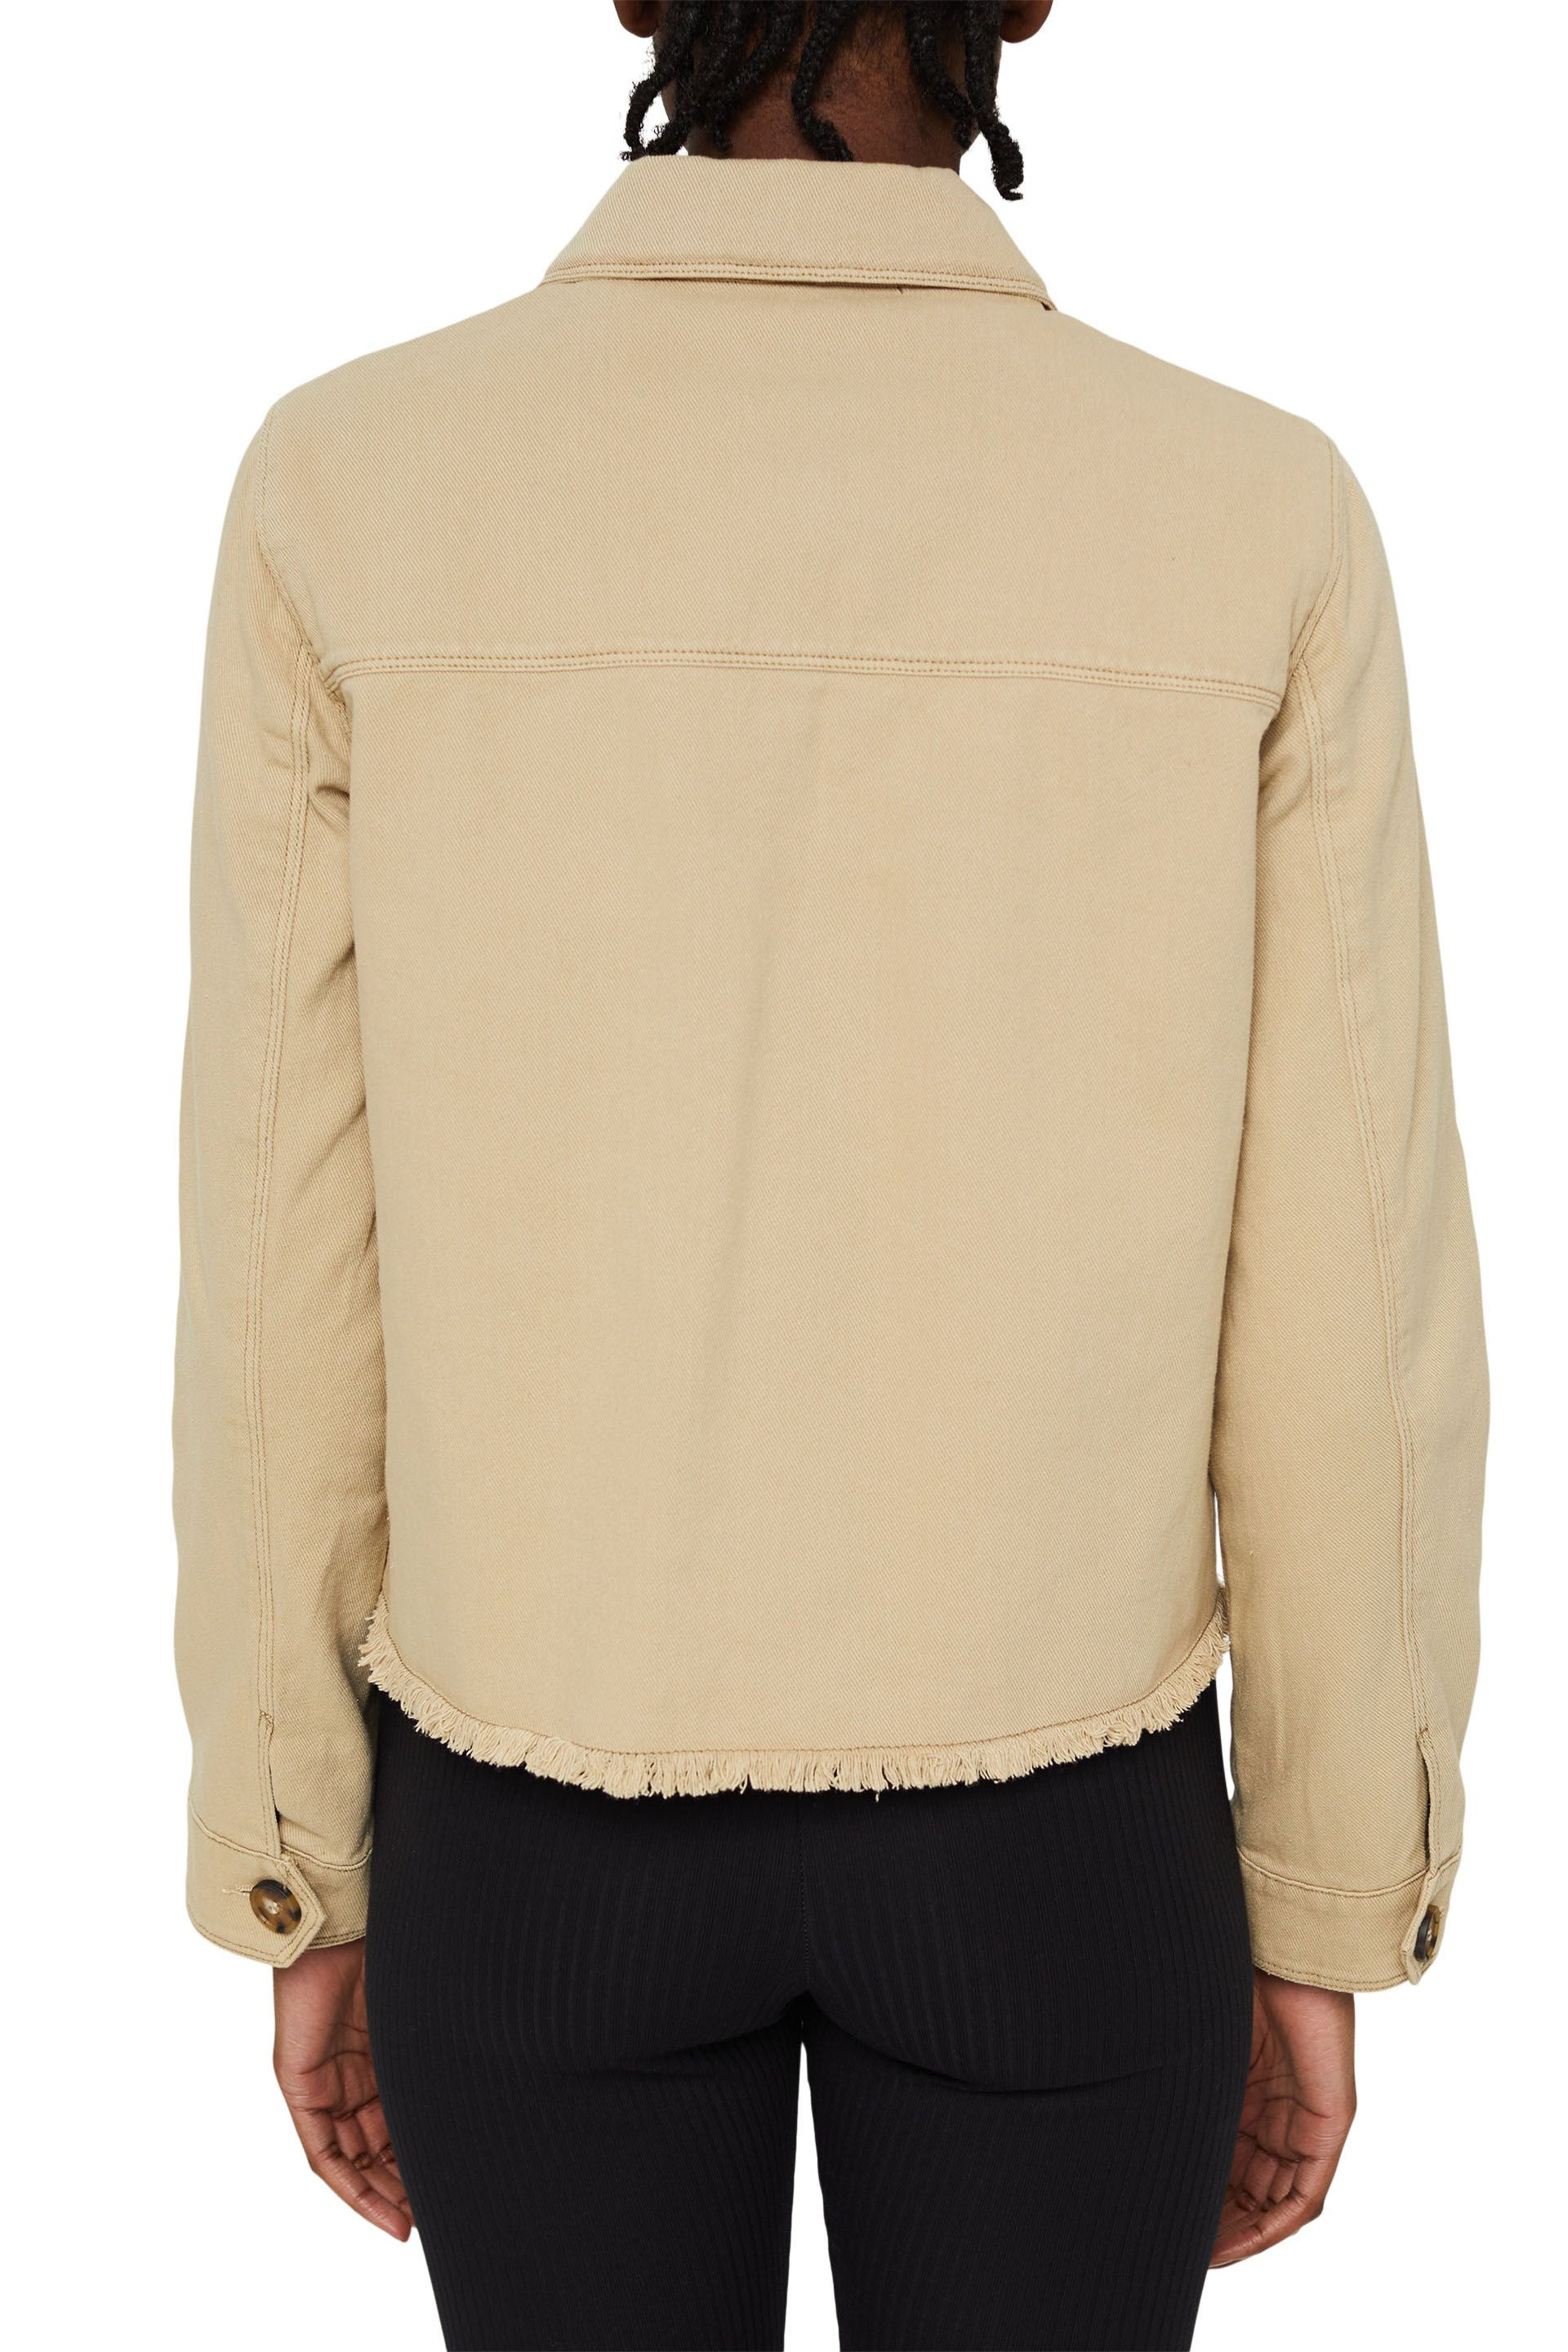 Pure cotton denim jacket, Beige, large image number 2